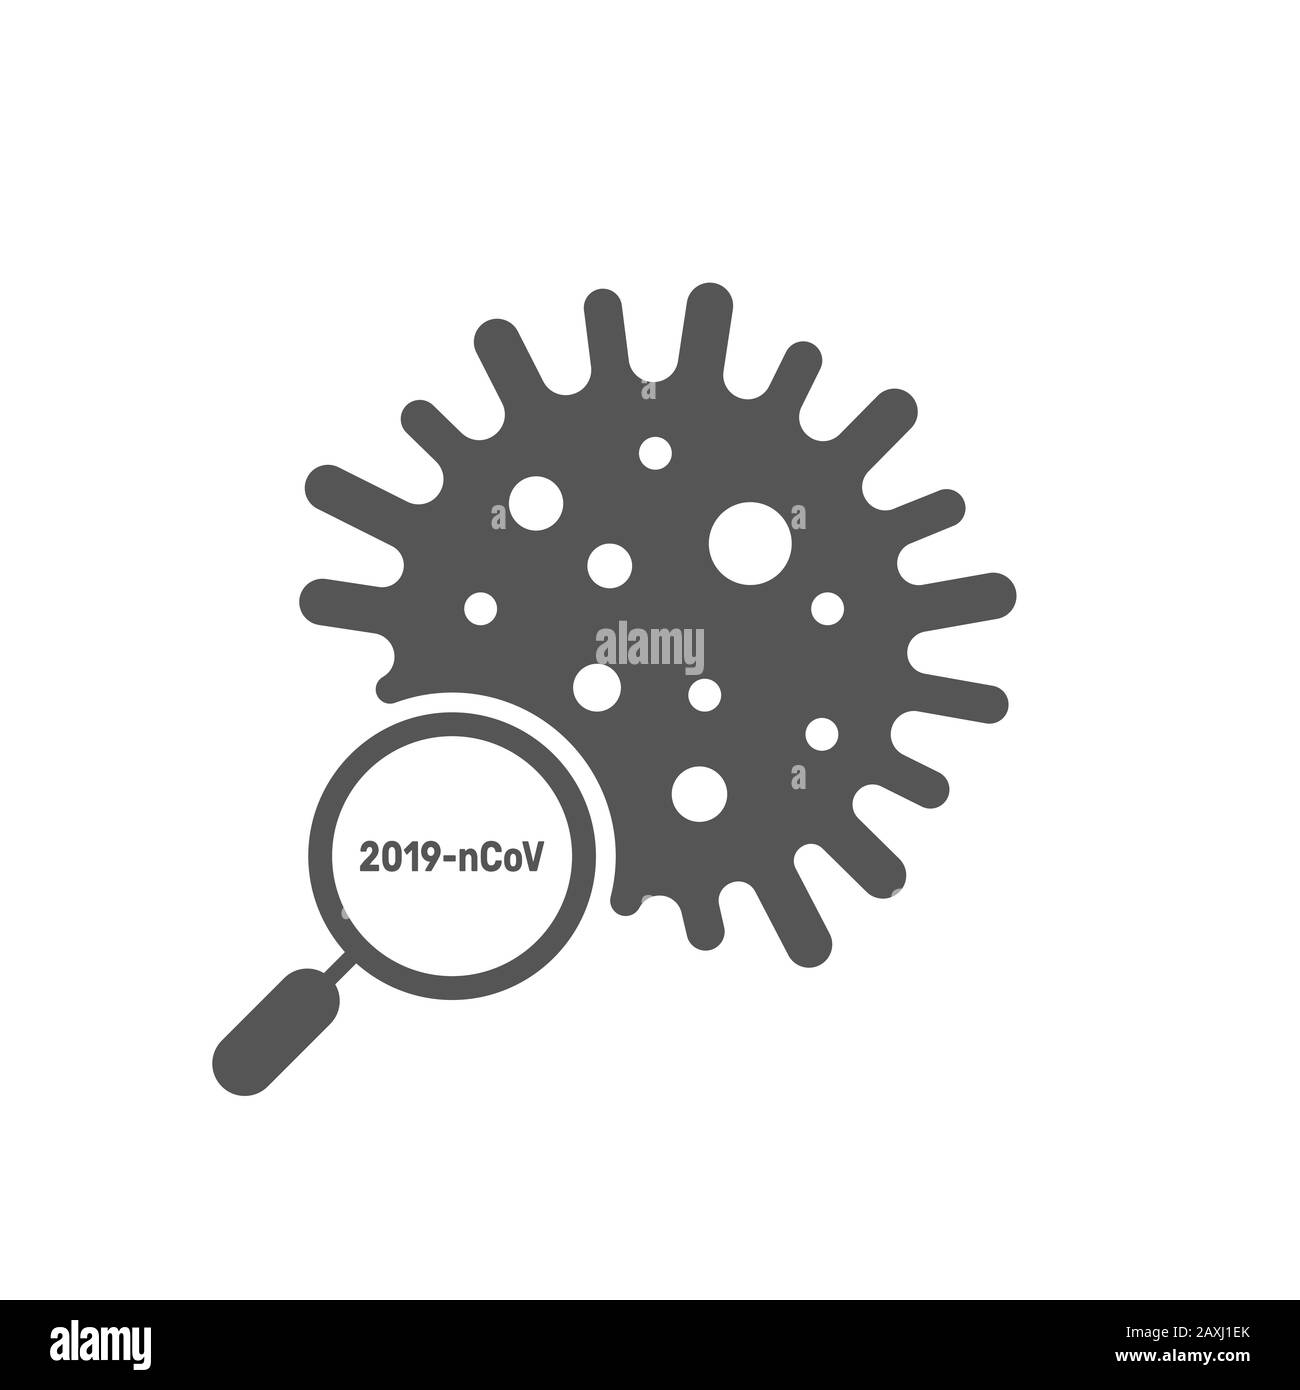 Signo de búsqueda e investigación del coronavirus. Reconocimiento de virus. Ilustración vectorial. EPS 10 Ilustración del Vector